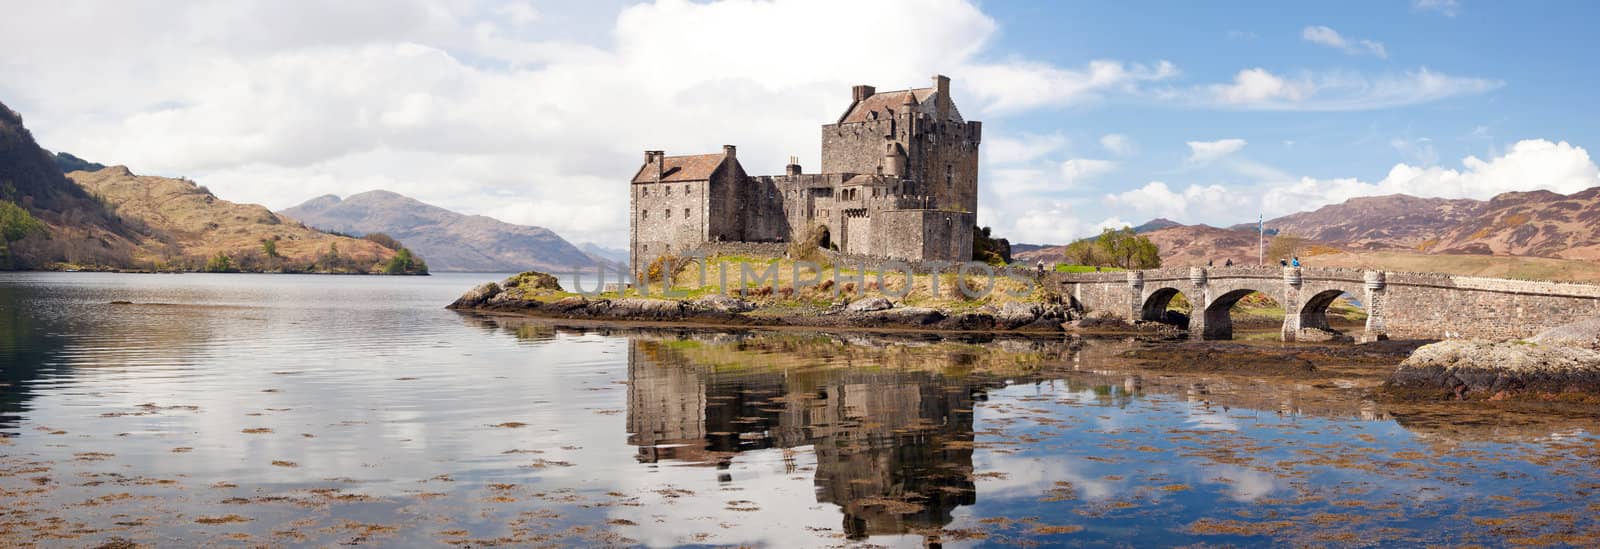 Panorama Reflection of Eilean Donan Castle, Highland Scotland.